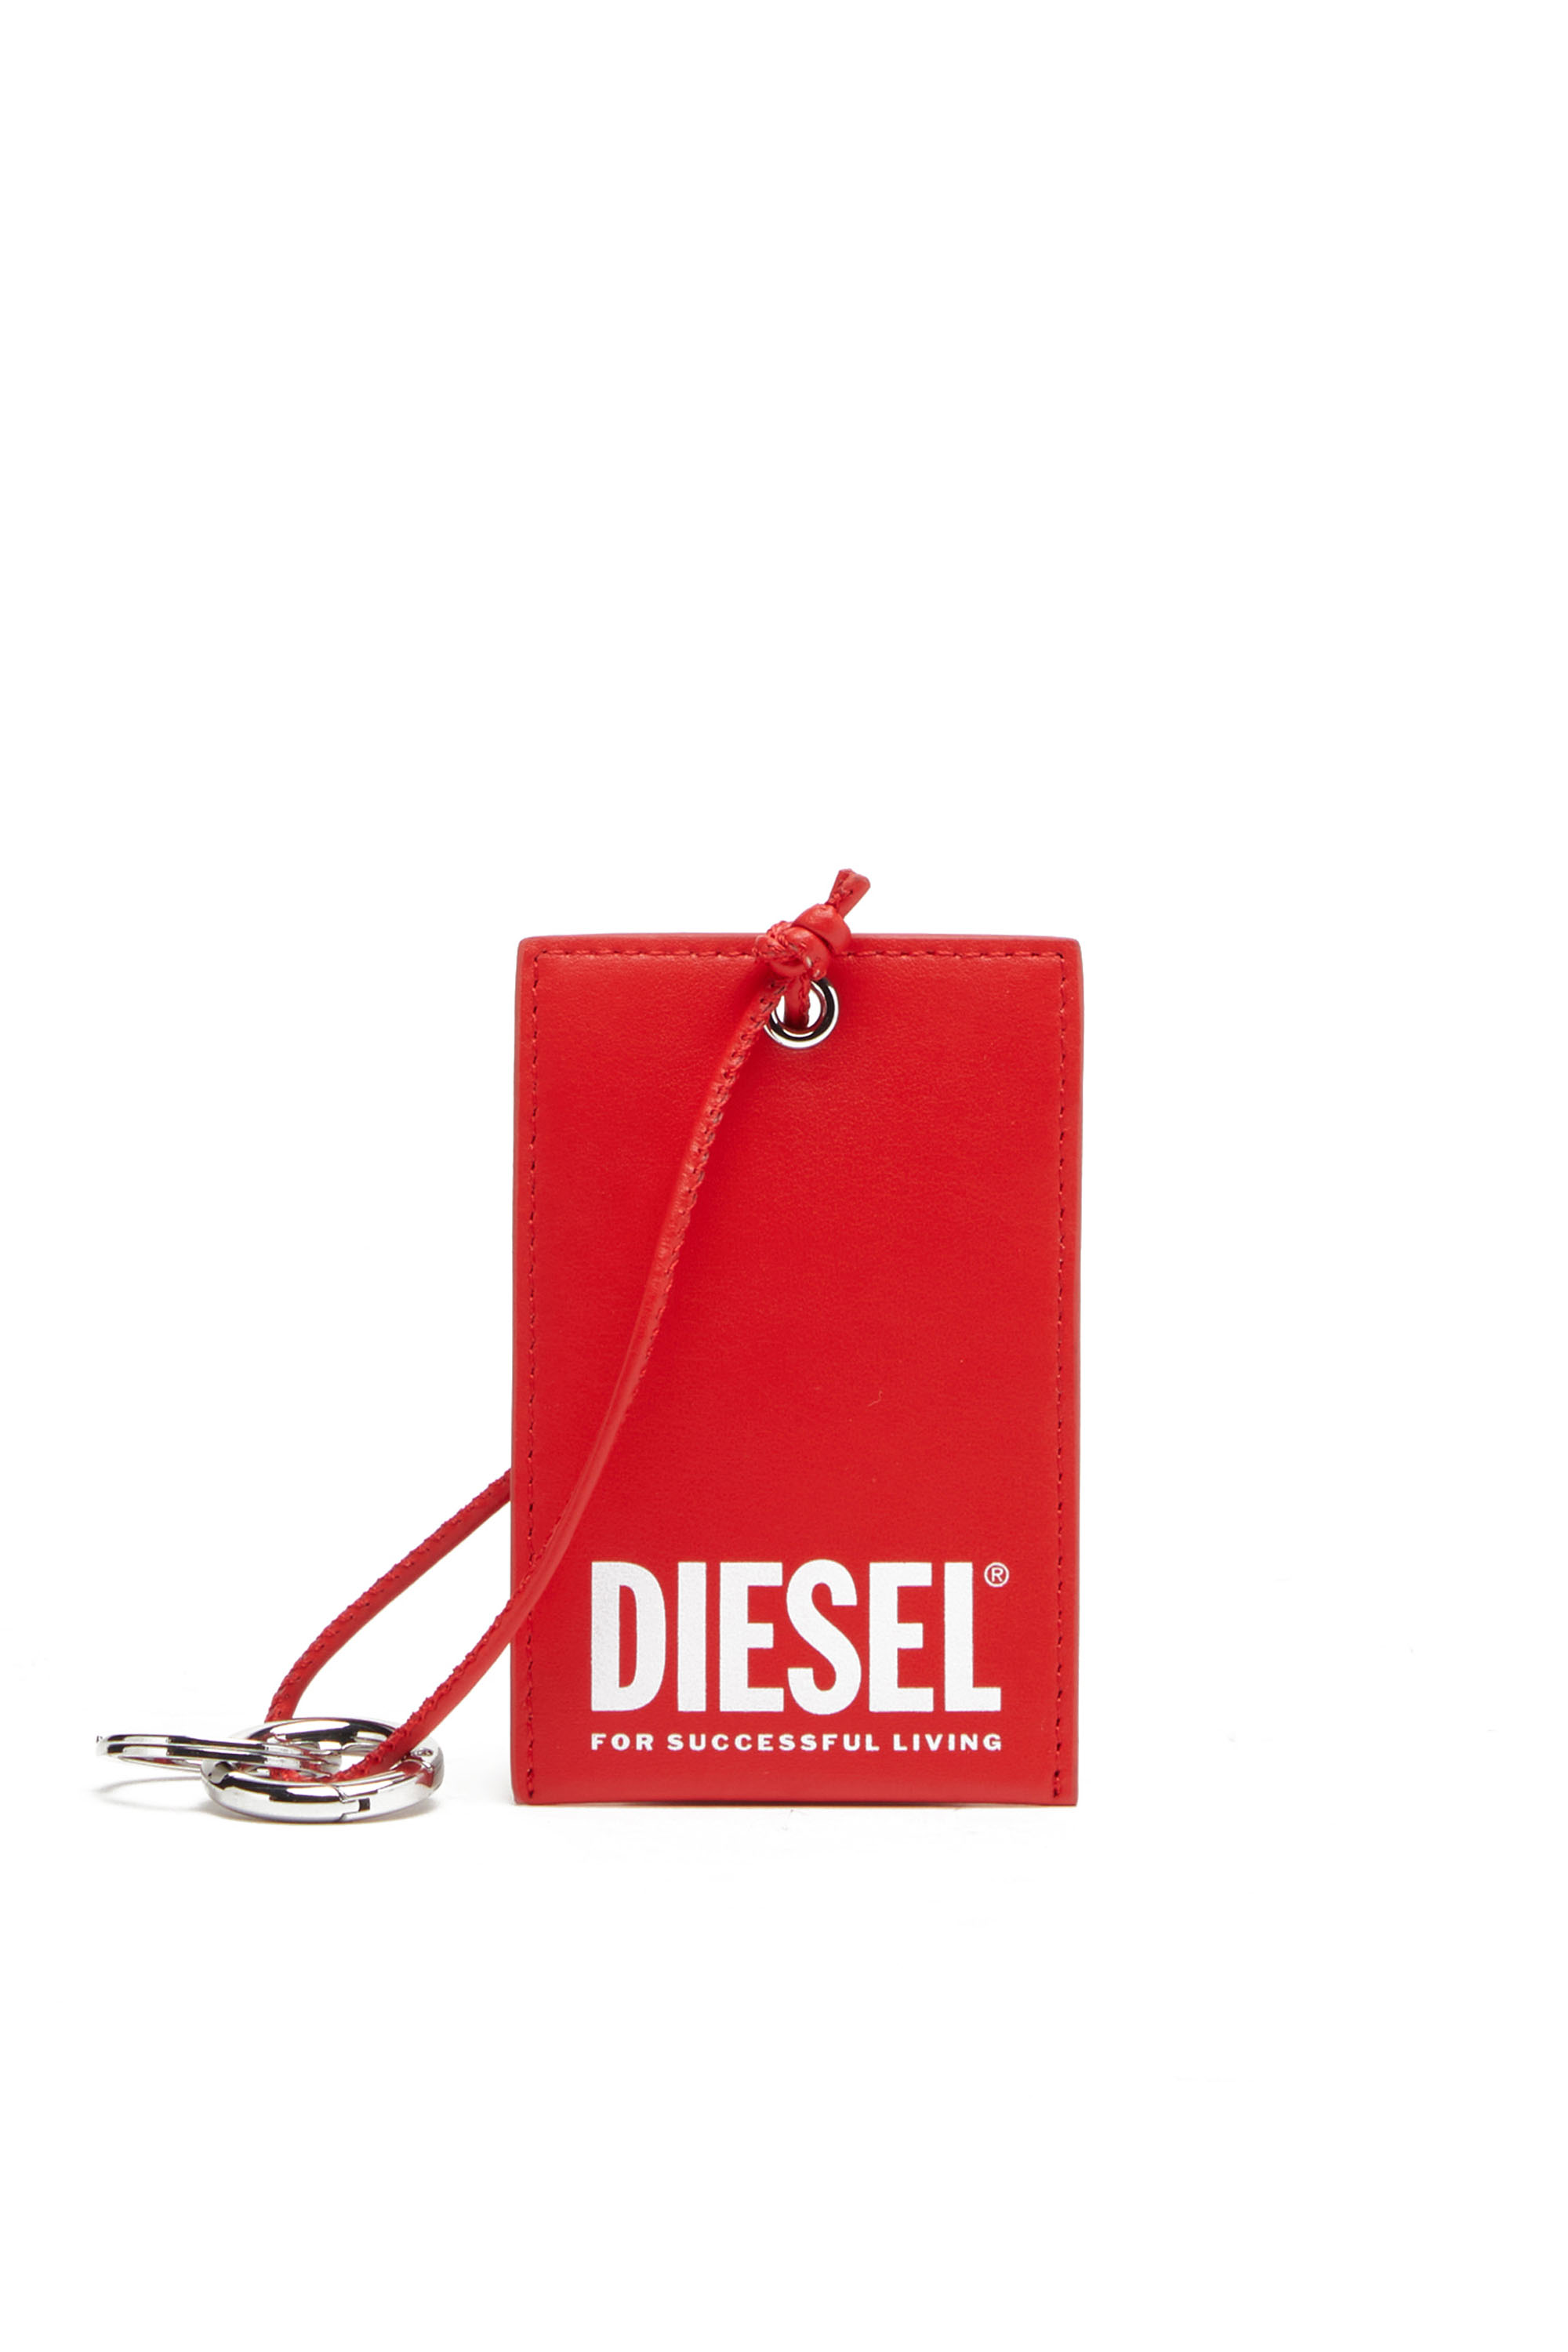 Diesel - DSL TAG, Red - Image 1